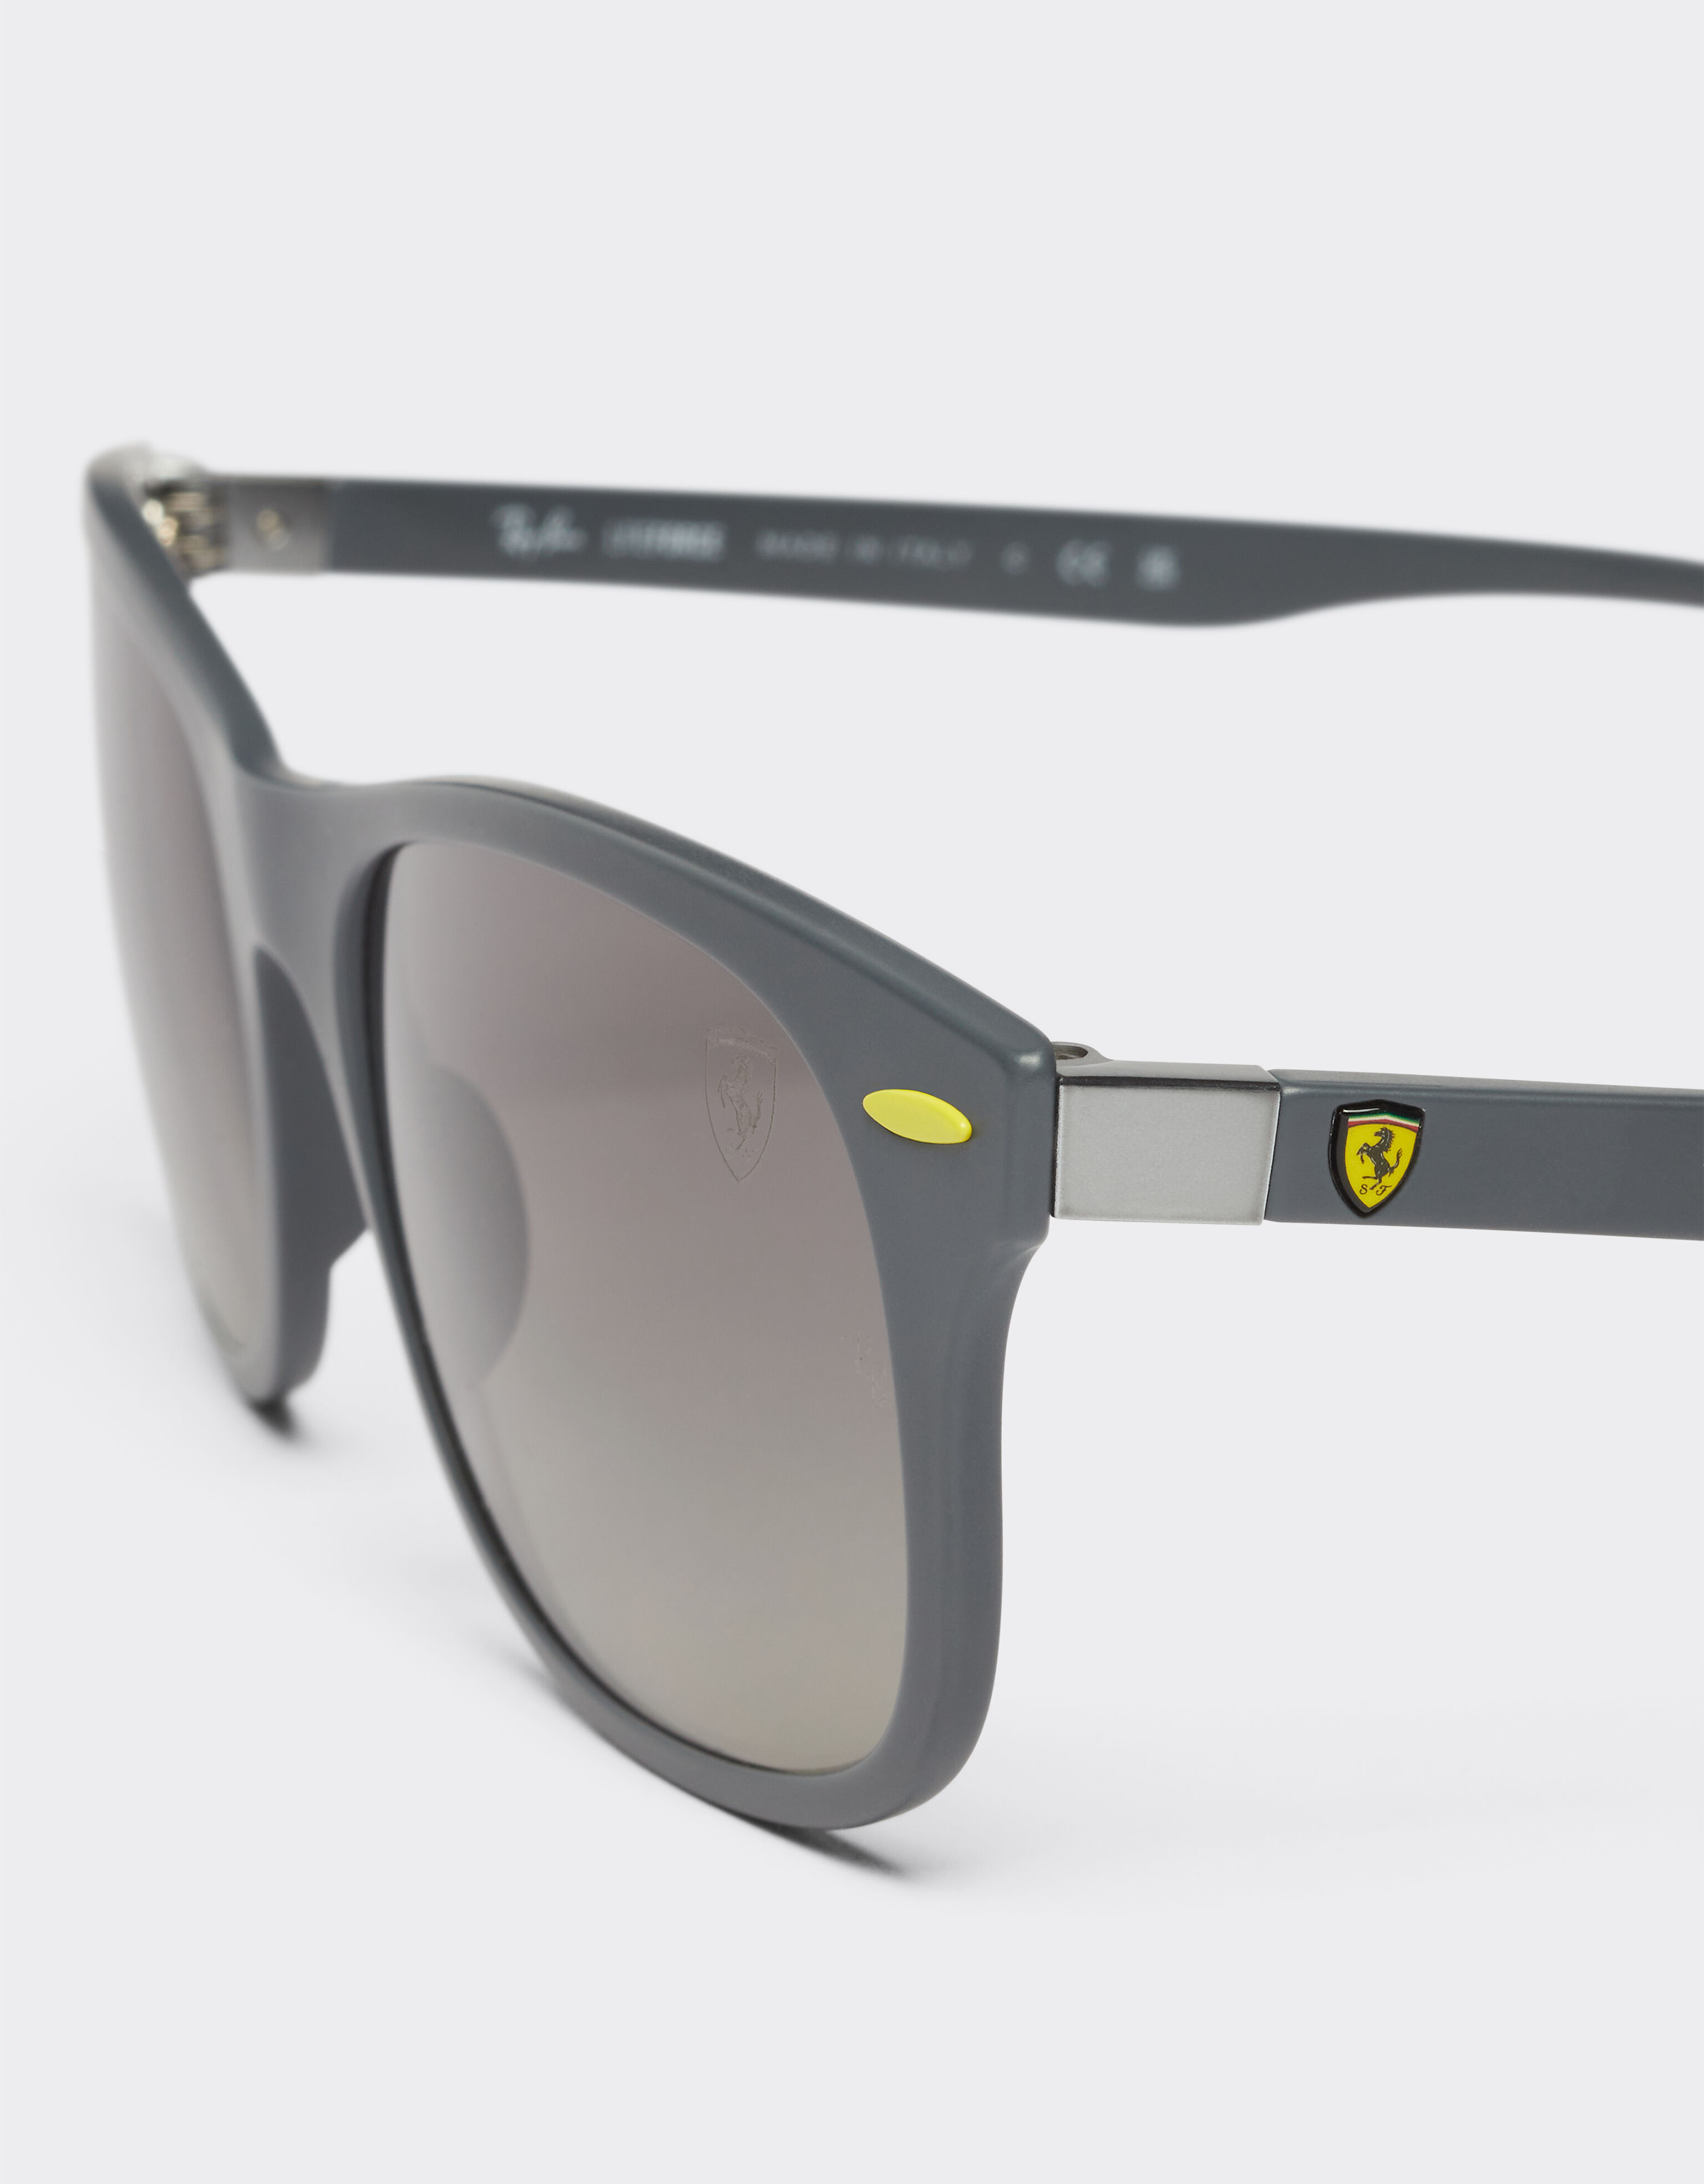 Ferrari 雷朋与法拉利车队合作款 0RB4607M 灰色渐变镜片灰色太阳镜 Ingrid F1297f